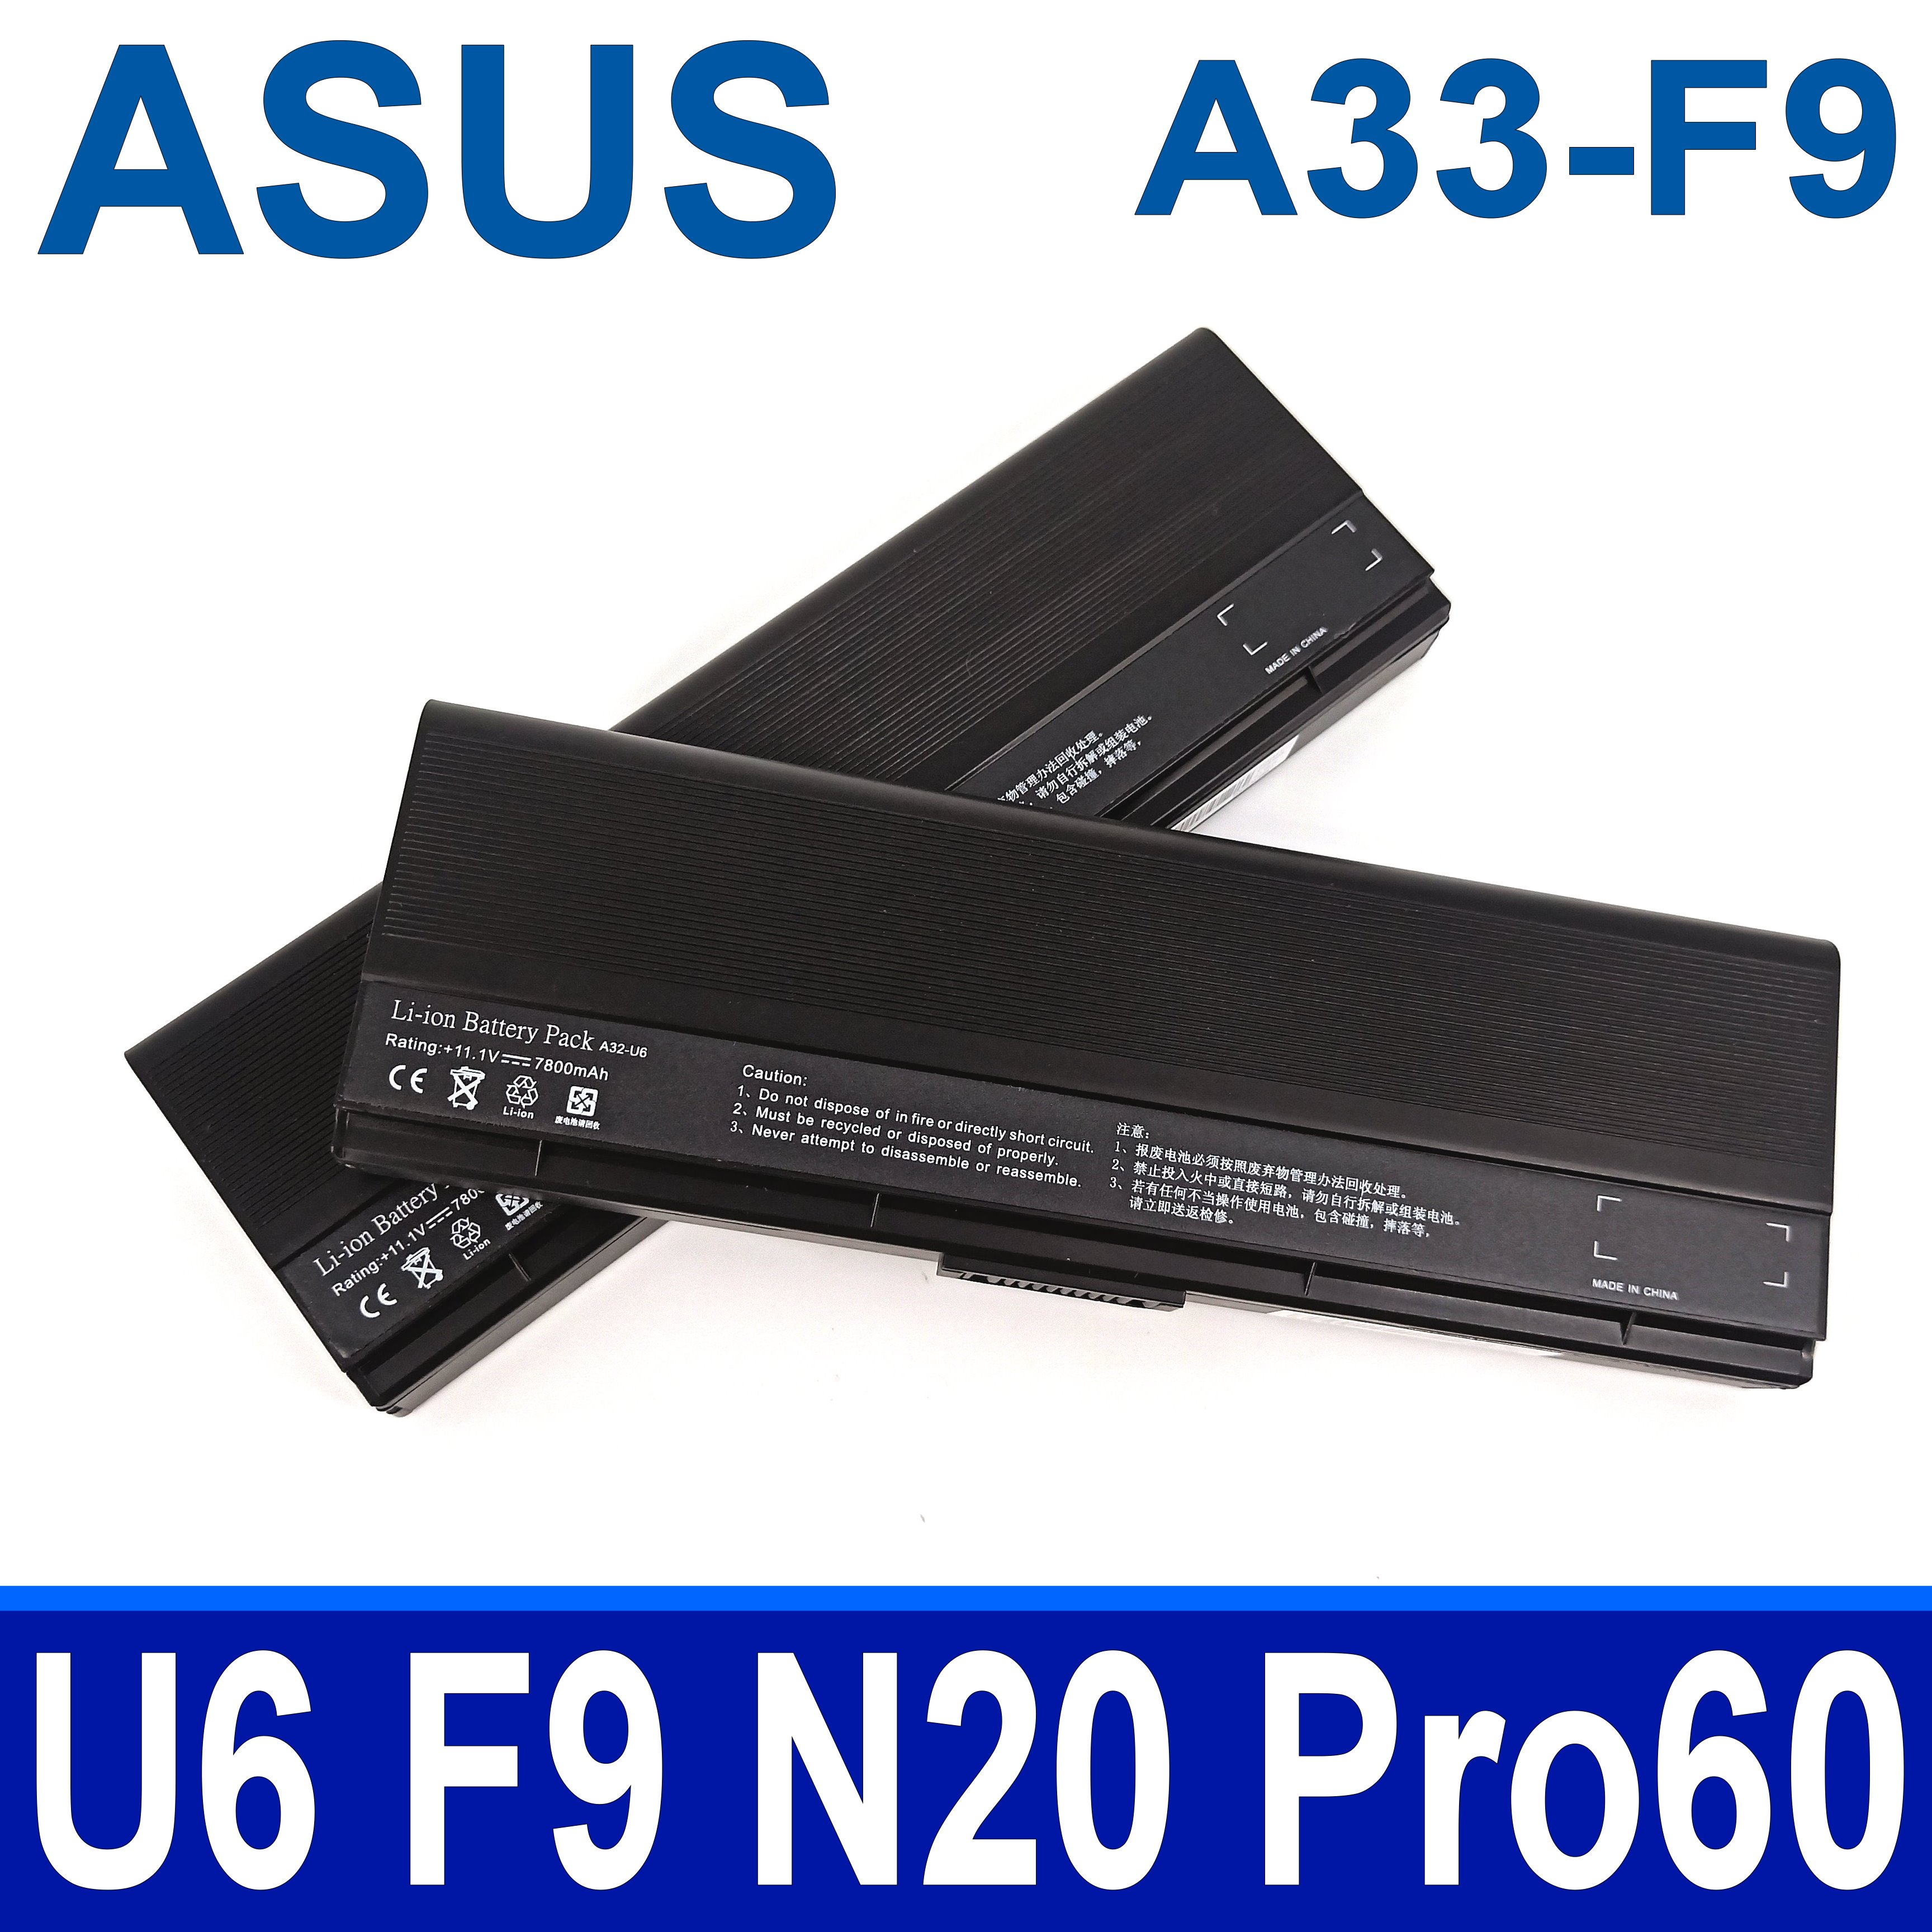 ASUS A33-F9 原廠規格 電池 F6 F6A F6E F6H F6K F6S F6V F6VE N20 N20A N20H X20 X20E X20S Pro60 Pro60E Pro60VE U6 U6S U6SG U6V U6VC U6C U6E U6Ep F9 F9DC F9E F9F F9G F9J F9S F9SG A31-U6 A32-U6 A31-F9 A31-T13 A32-F9